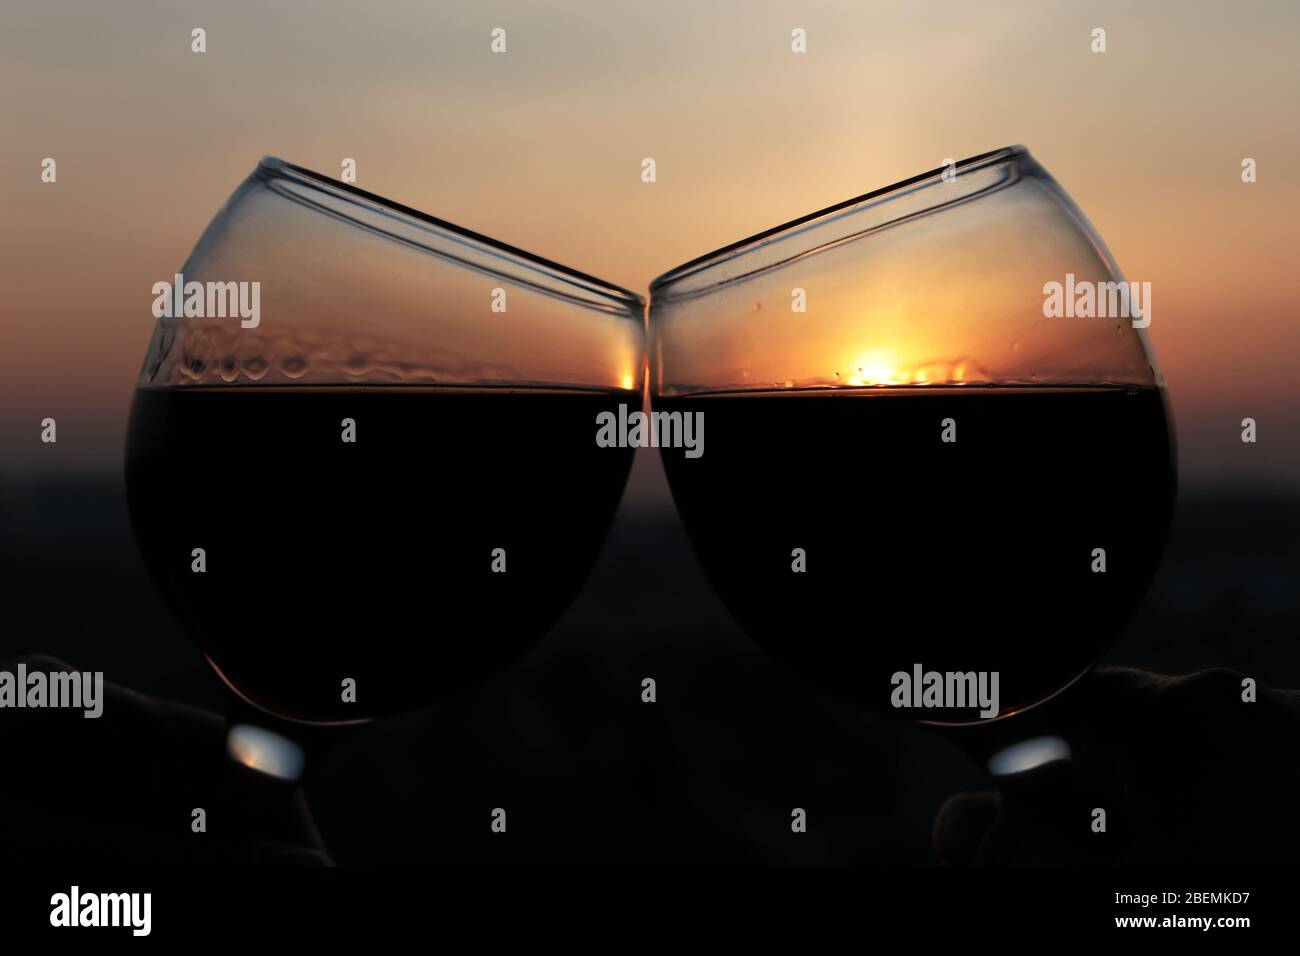 Zwei Gläser mit Rotwein auf buntem Sonnenuntergang Hintergrund. Paar klirren Gläser, Konzept der Feier, romantischen Abend zu Hause Quarantäne, Liebe Datum Stockfoto